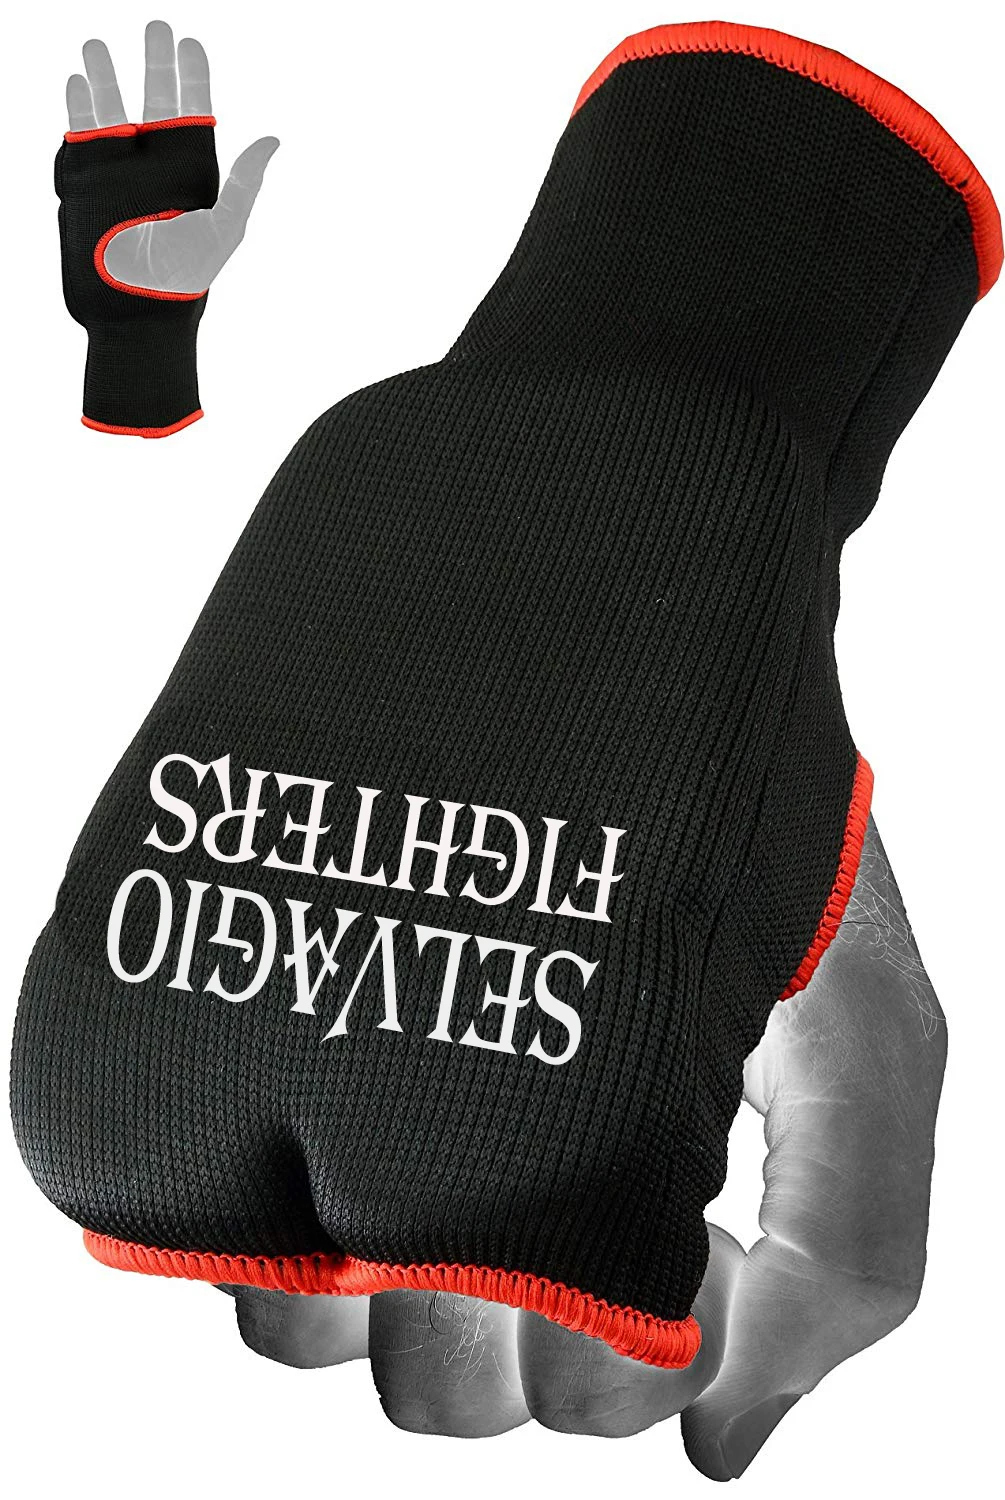 T-Sport Inner Gloves Fingerless Elasticated Boxing Martial Arts Black Red MMA 